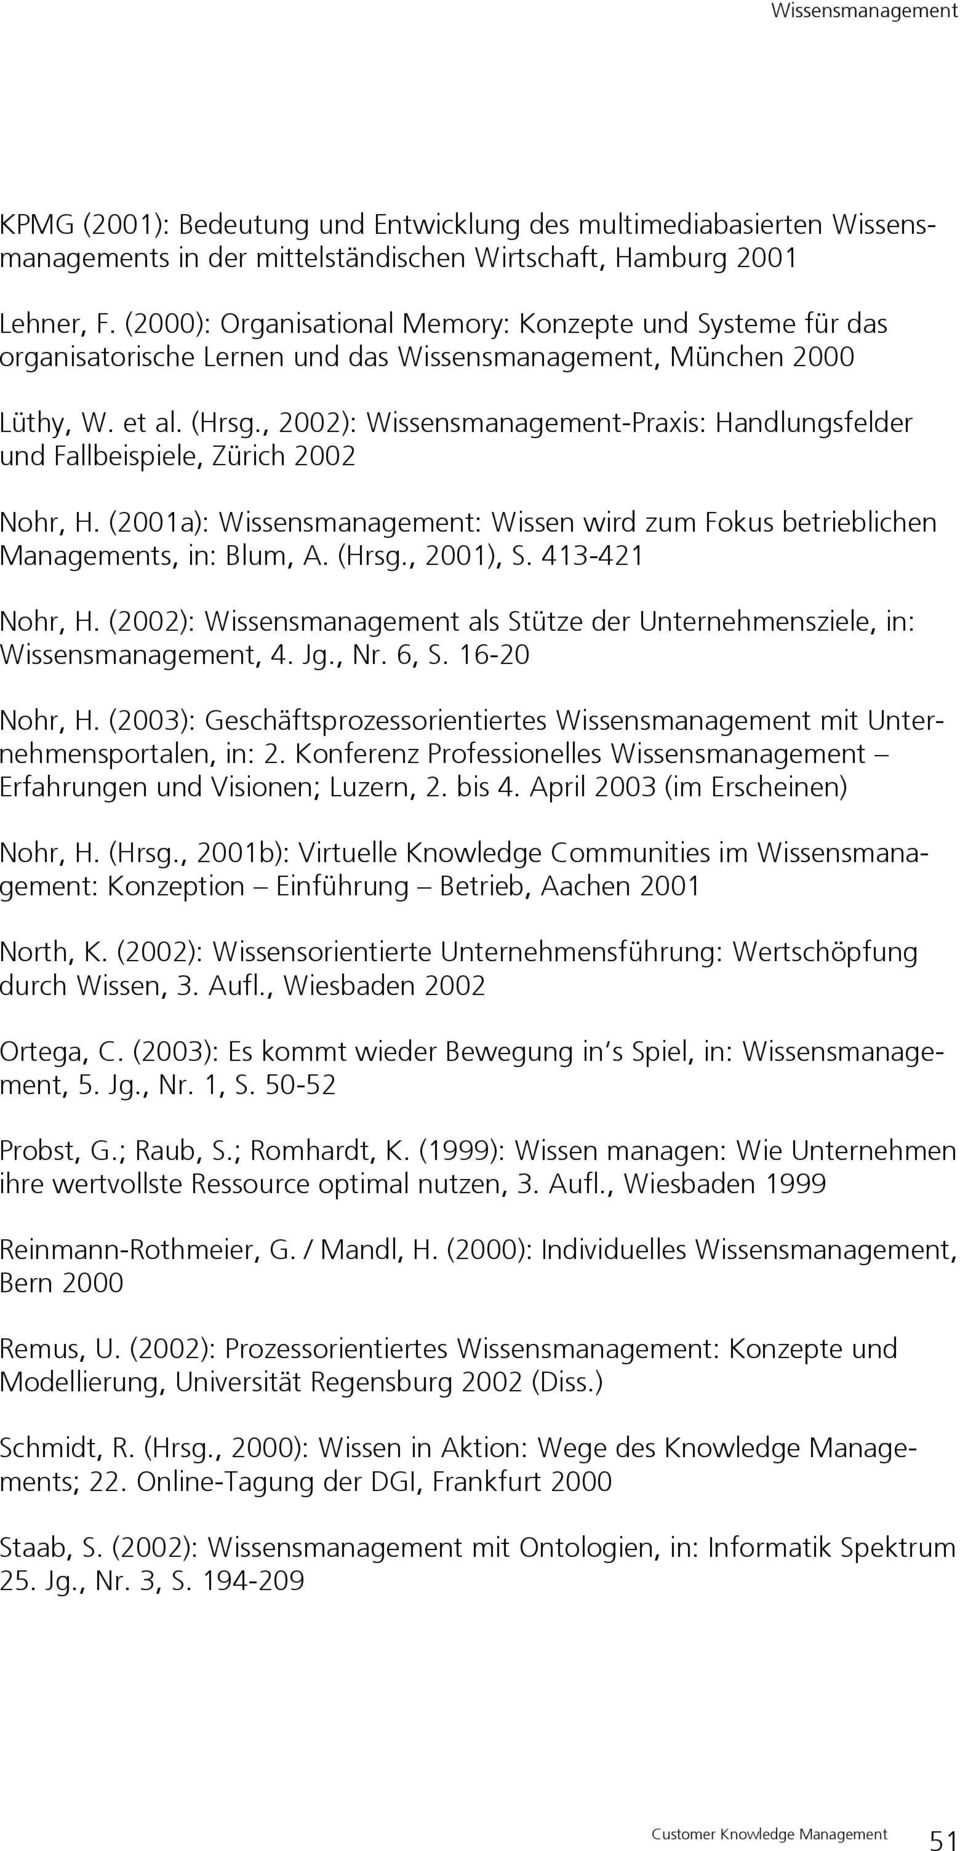 , 2002): Wissensmanagement-Praxis: Handlungsfelder und Fallbeispiele, Zürich 2002 Nohr, H. (2001a): Wissensmanagement: Wissen wird zum Fokus betrieblichen Managements, in: Blum, A. (Hrsg., 2001), S.